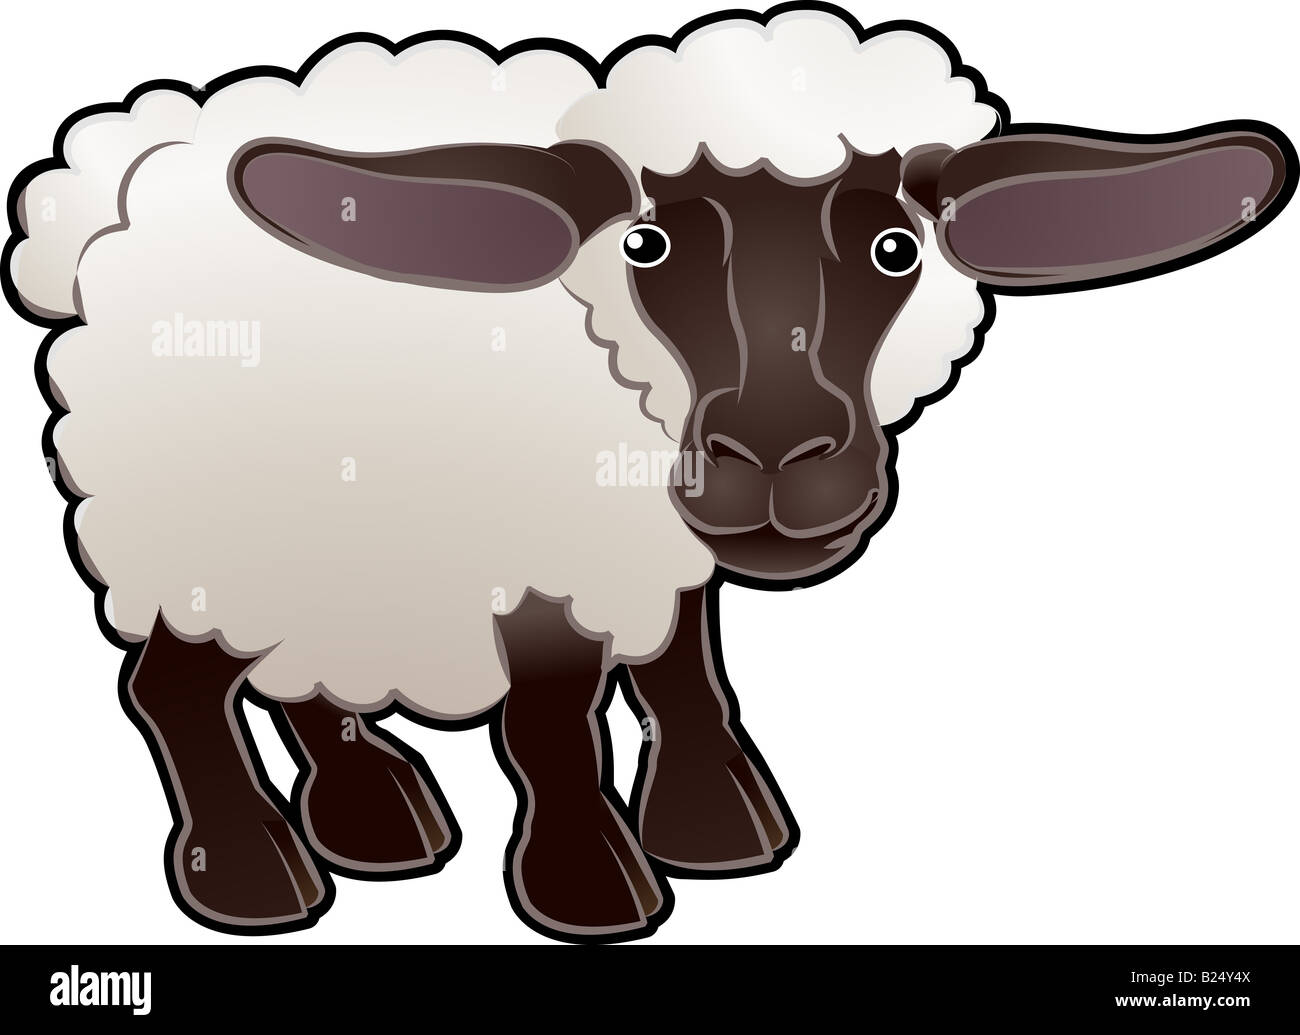 Eine niedliche Schafe Bauernhof Tier illustration Stockfoto